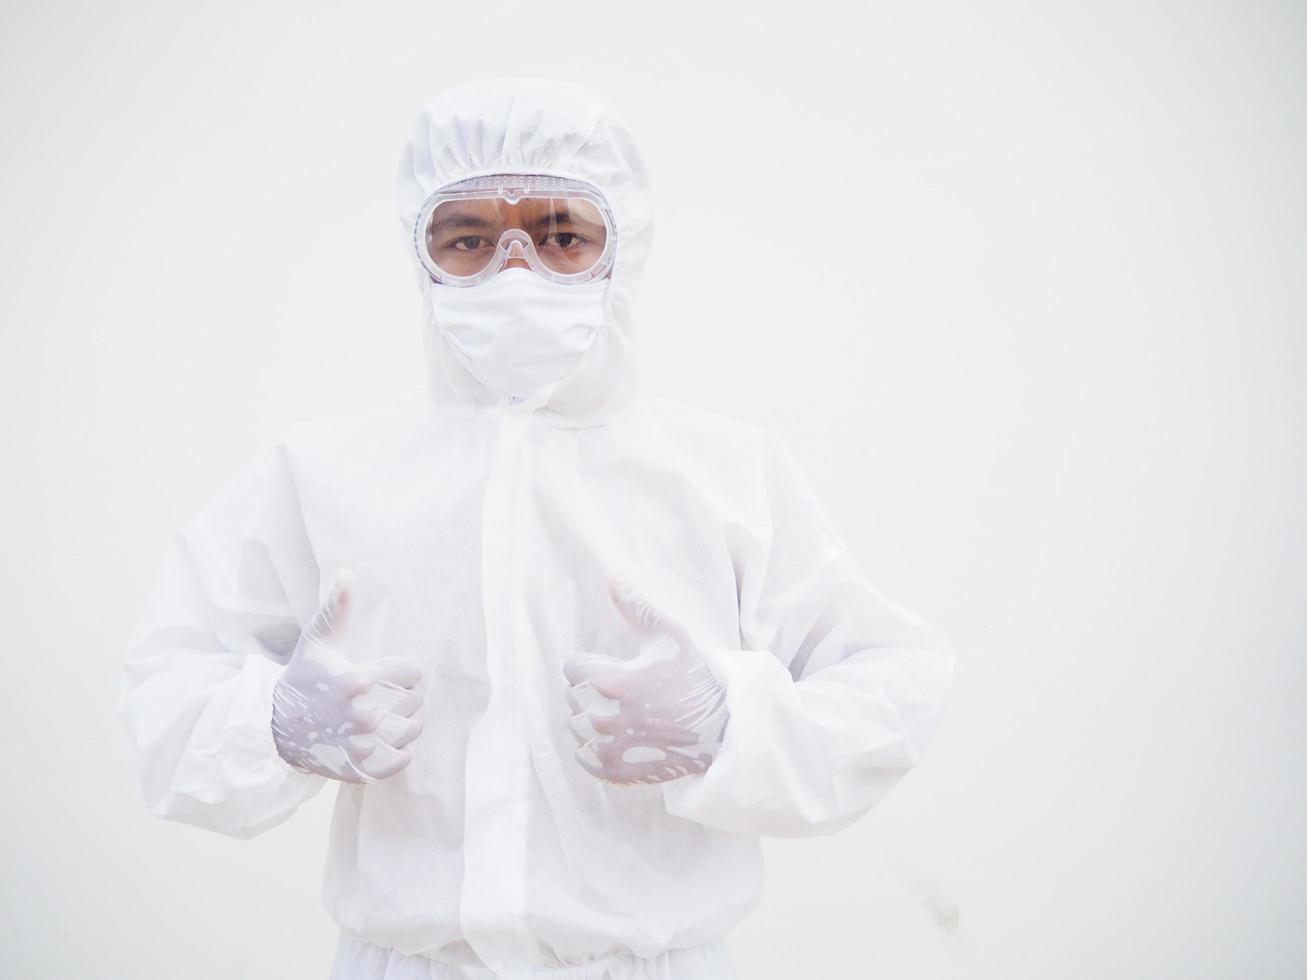 médecin ou scientifique de sexe masculin asiatique en uniforme de suite epi montrant les pouces vers le haut. coronavirus ou covid-19 concept isolé fond blanc photo